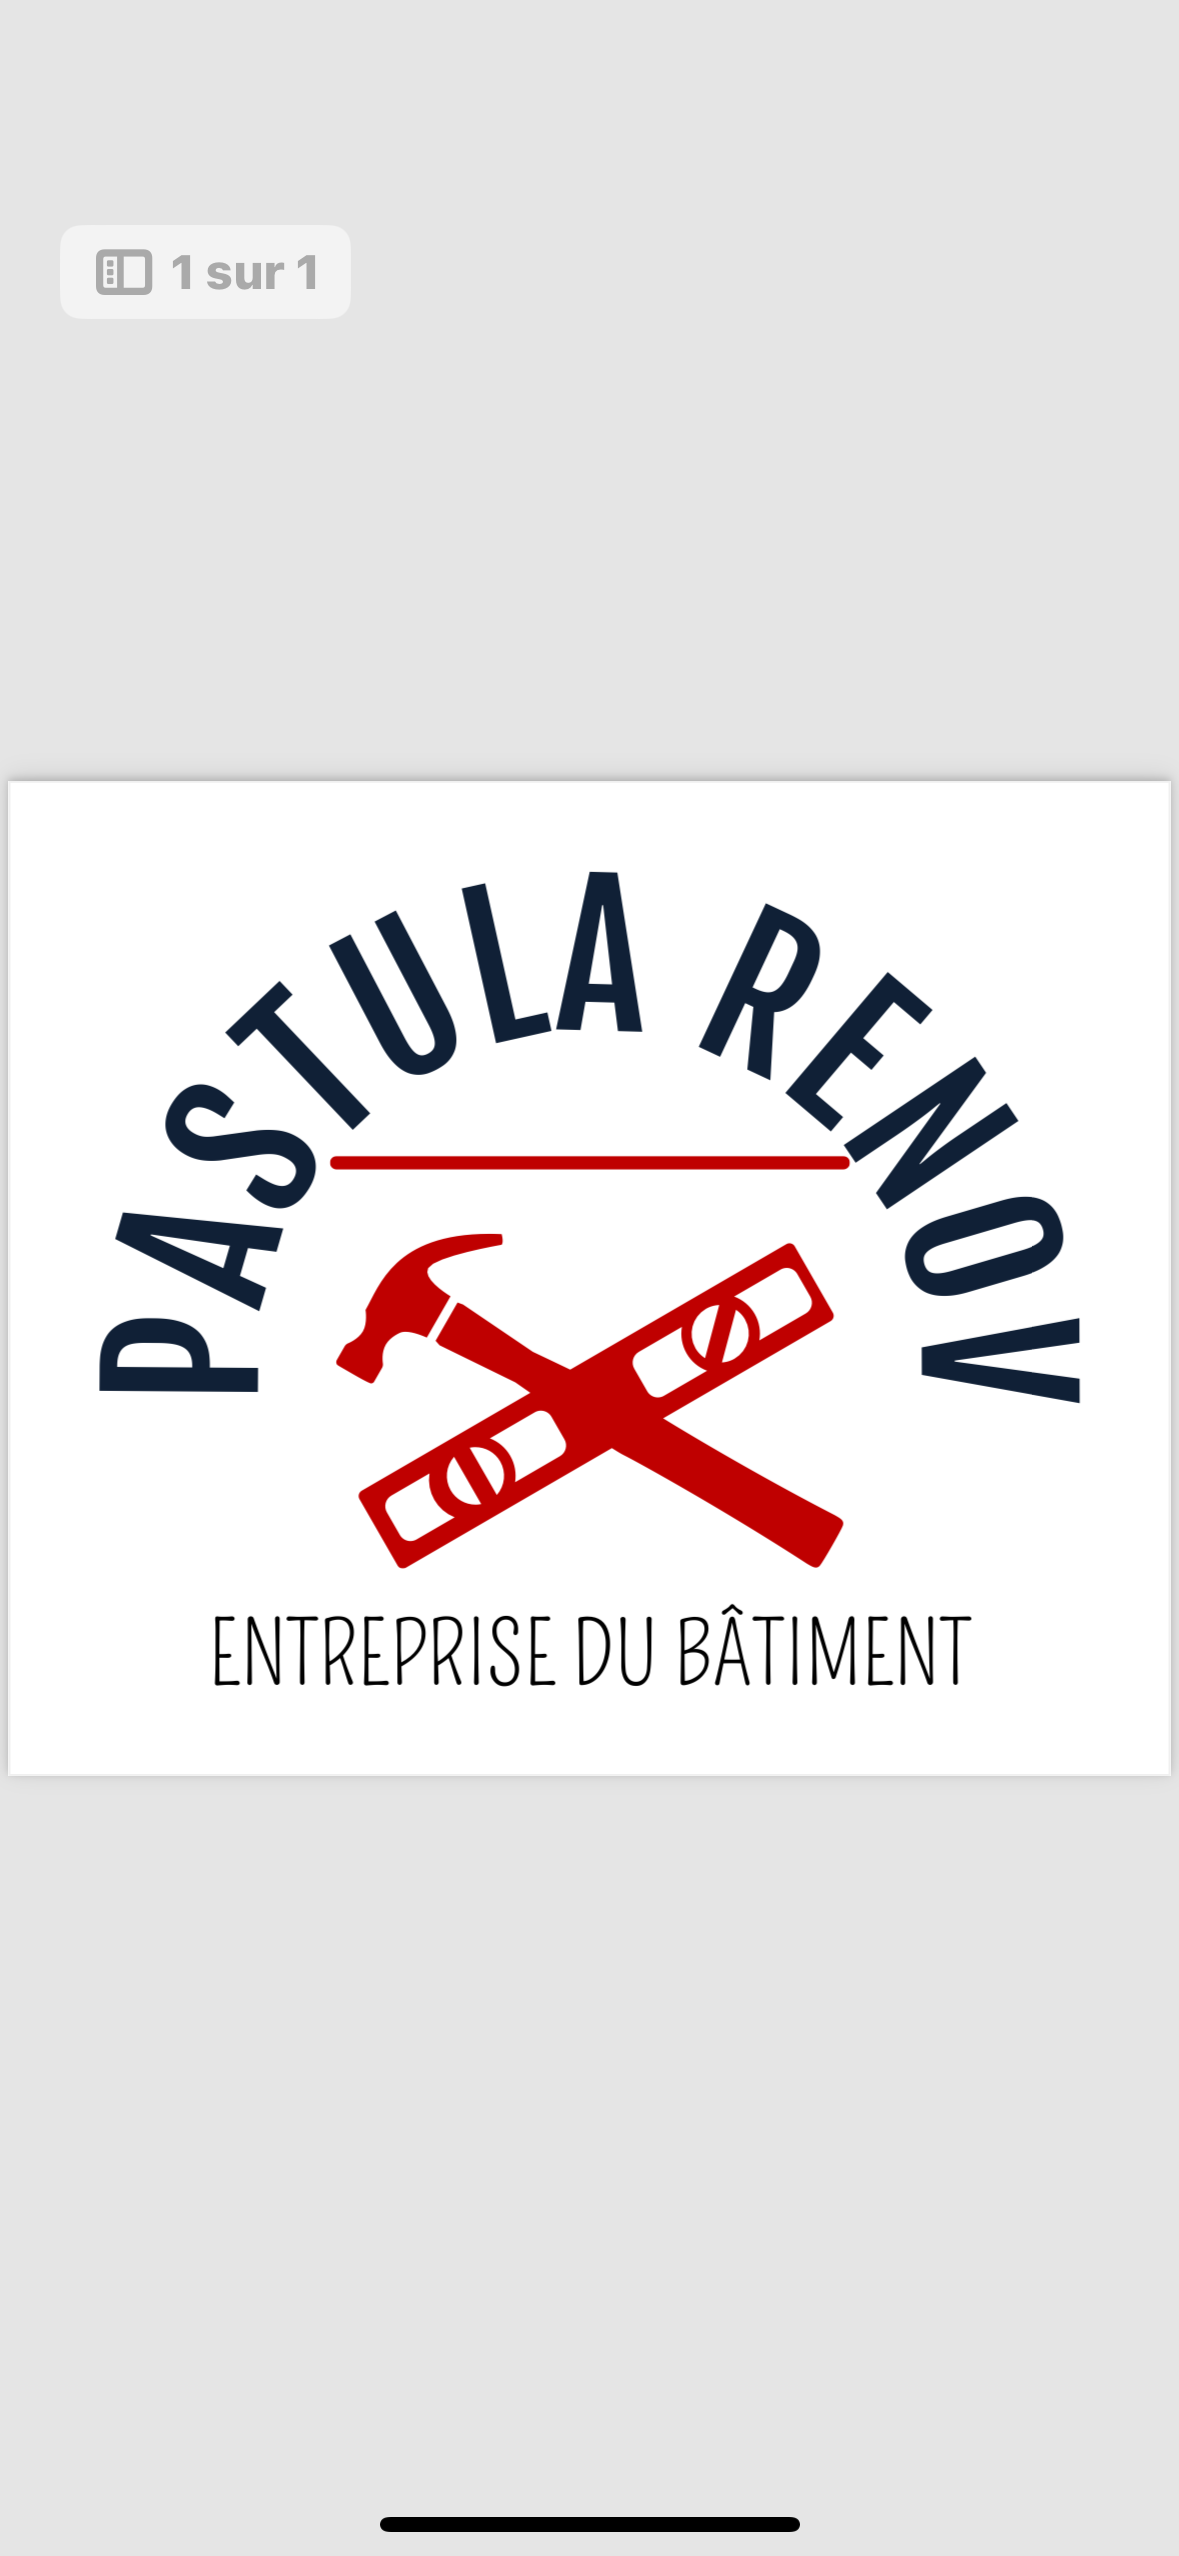 Logo de Pastula Krzysztof, société de travaux en Construction, murs, cloisons, plafonds en plaques de plâtre